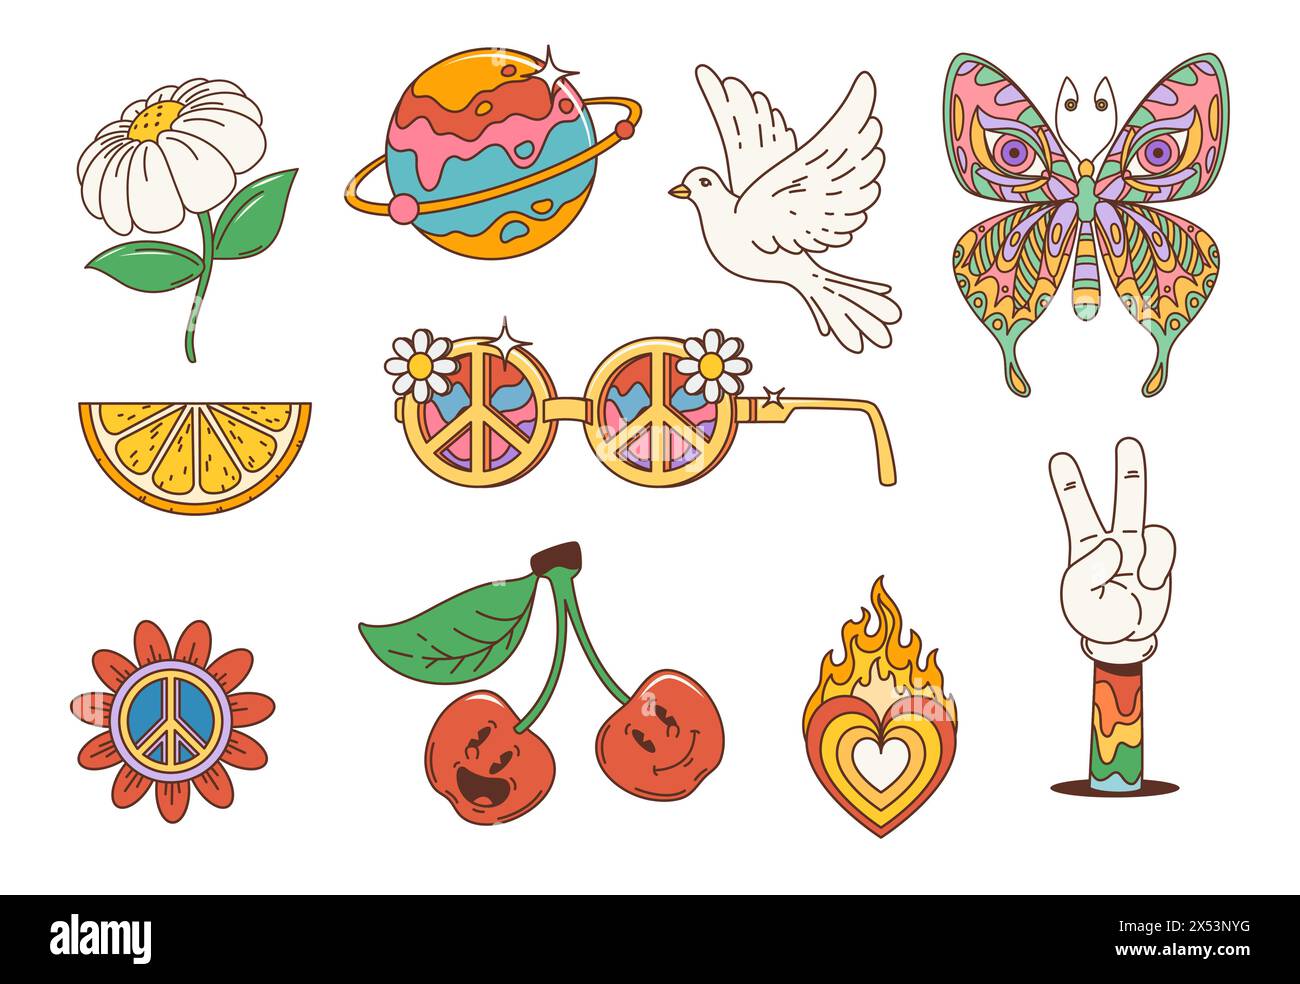 Simboli cartoni animati hippie retrò. Fiore vettoriale, cuore arcobaleno e occhiali da sole con simbolo di pace. Farfalla psichedelica d'annata, margherite, frutti di ciliegio e limone, pianeta, gesto della mano della vittoria Illustrazione Vettoriale